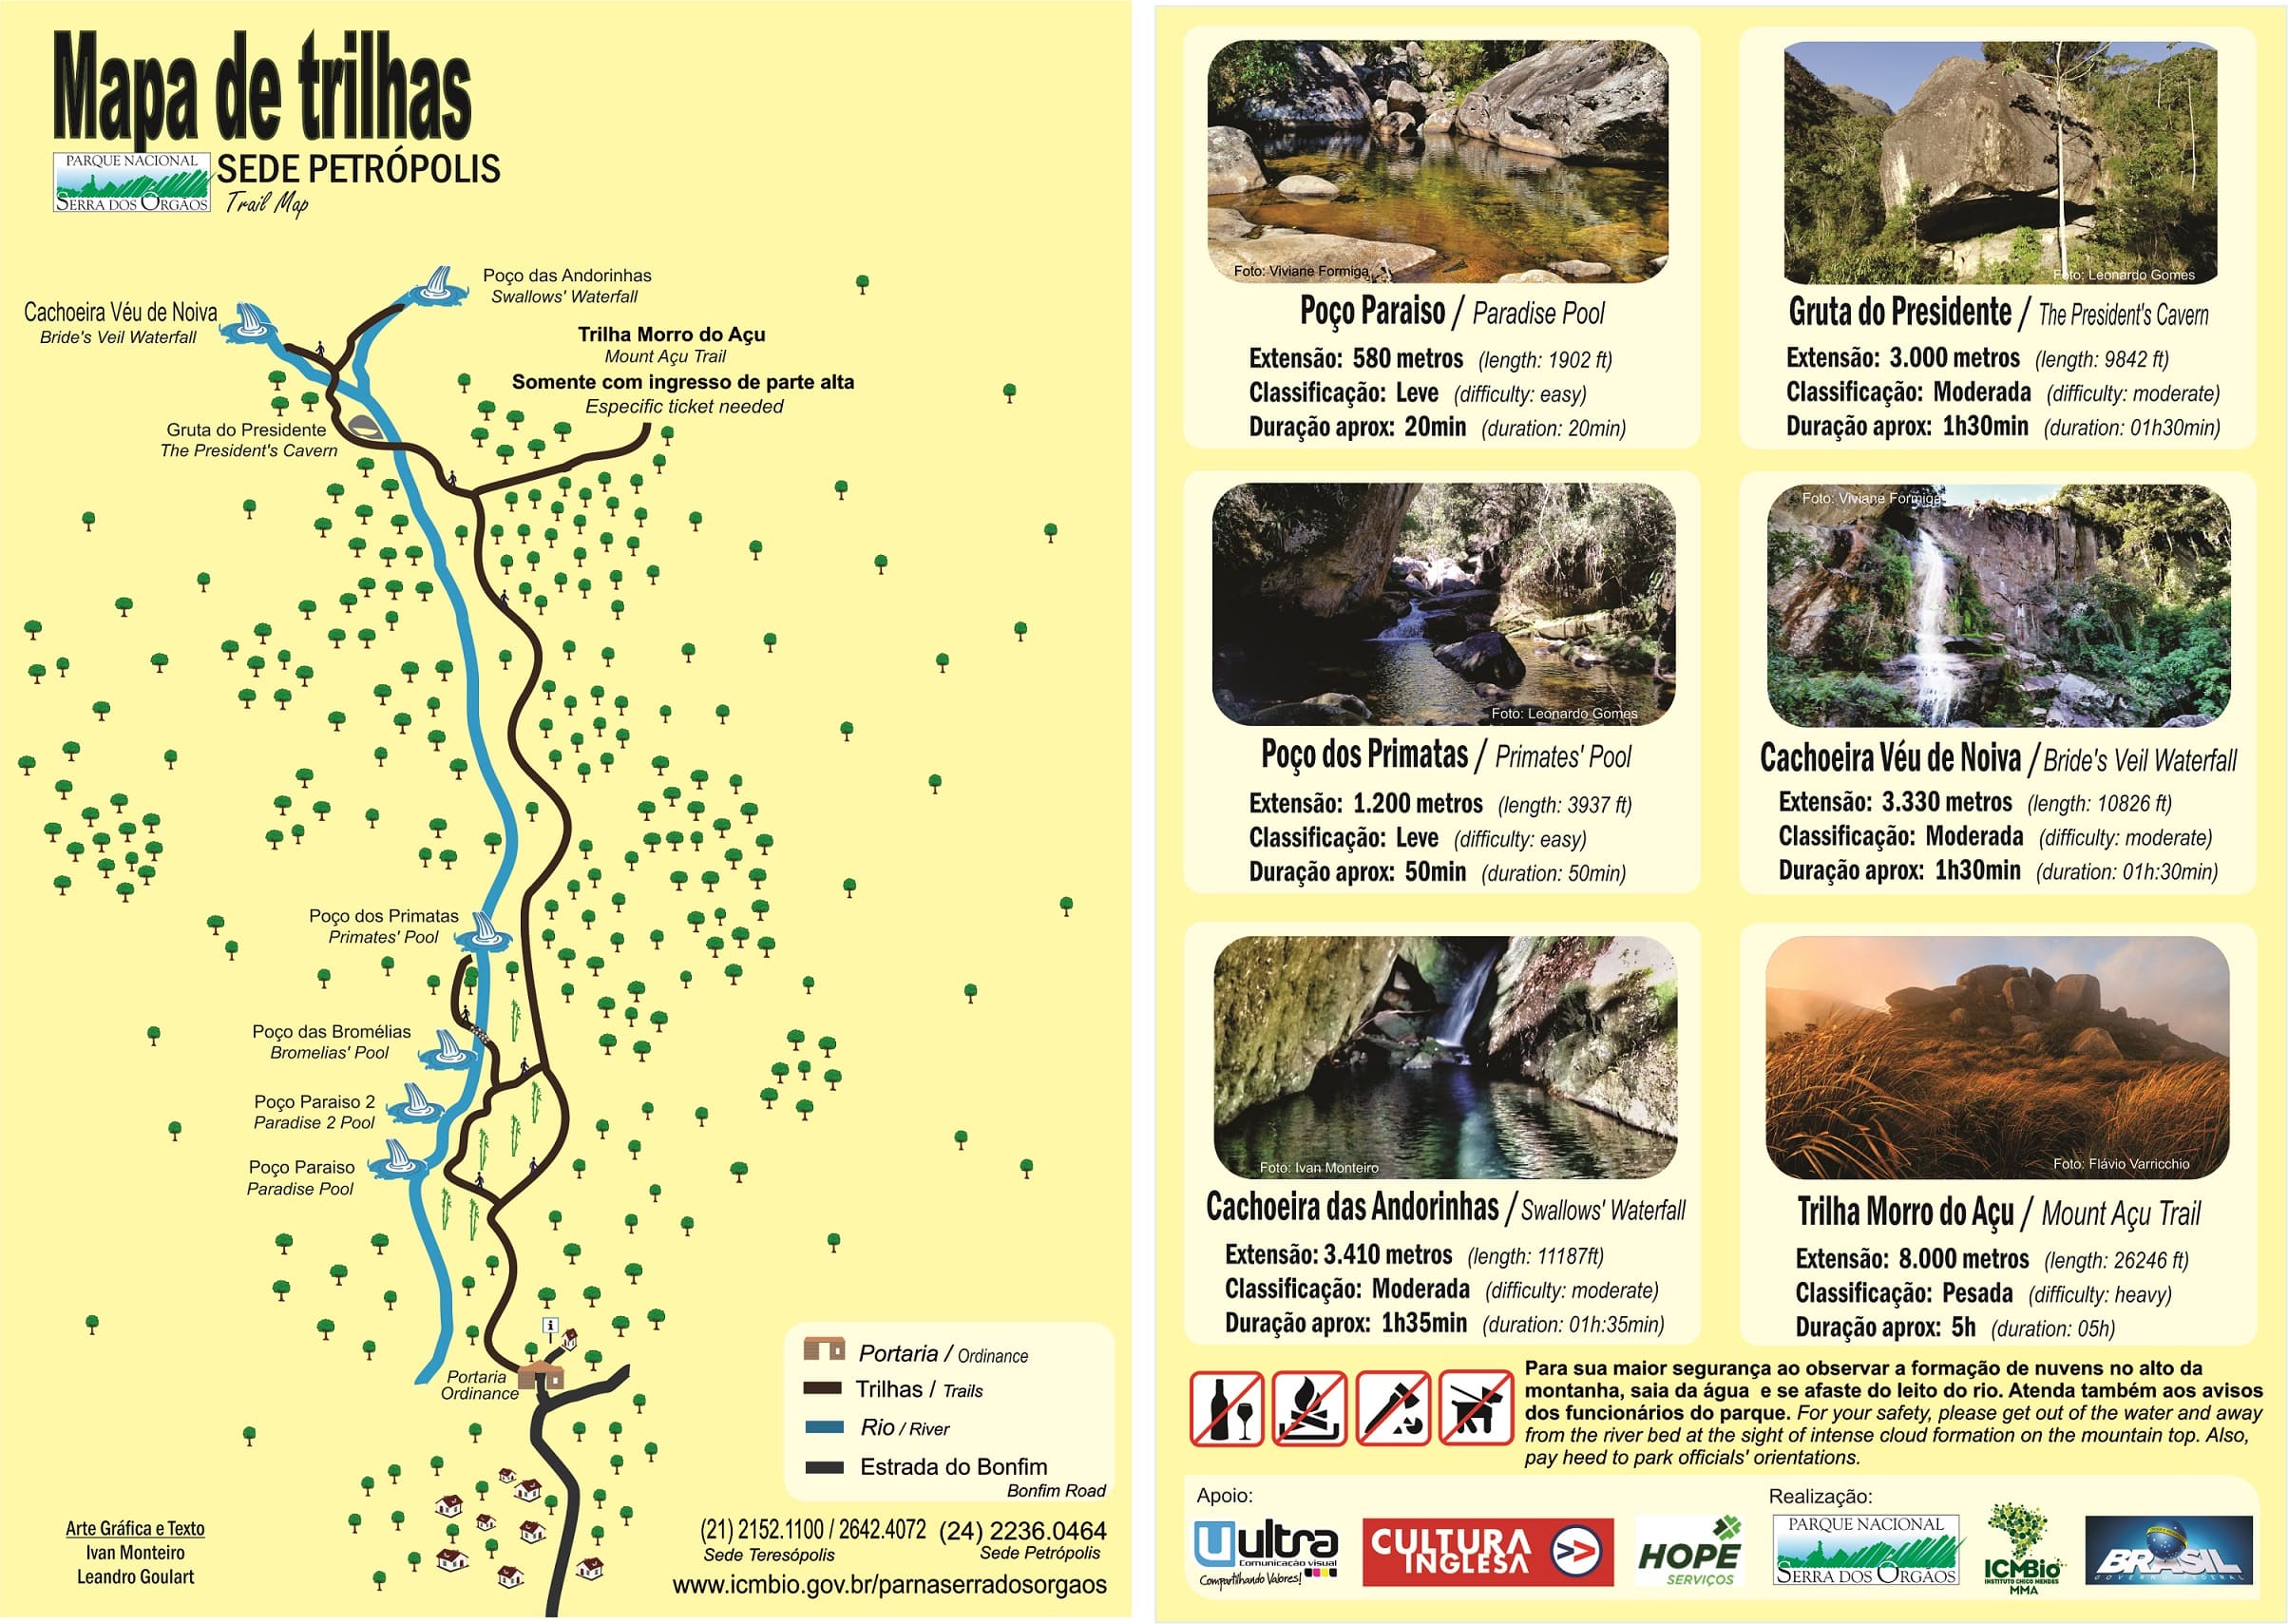 Lugares para visitar no Rio de Janeiro - Mapa de Trilhas do Parque Nacional da Serra dos Órgãos, sede Petrópolis | Foto: Reprodução/ICMBio.